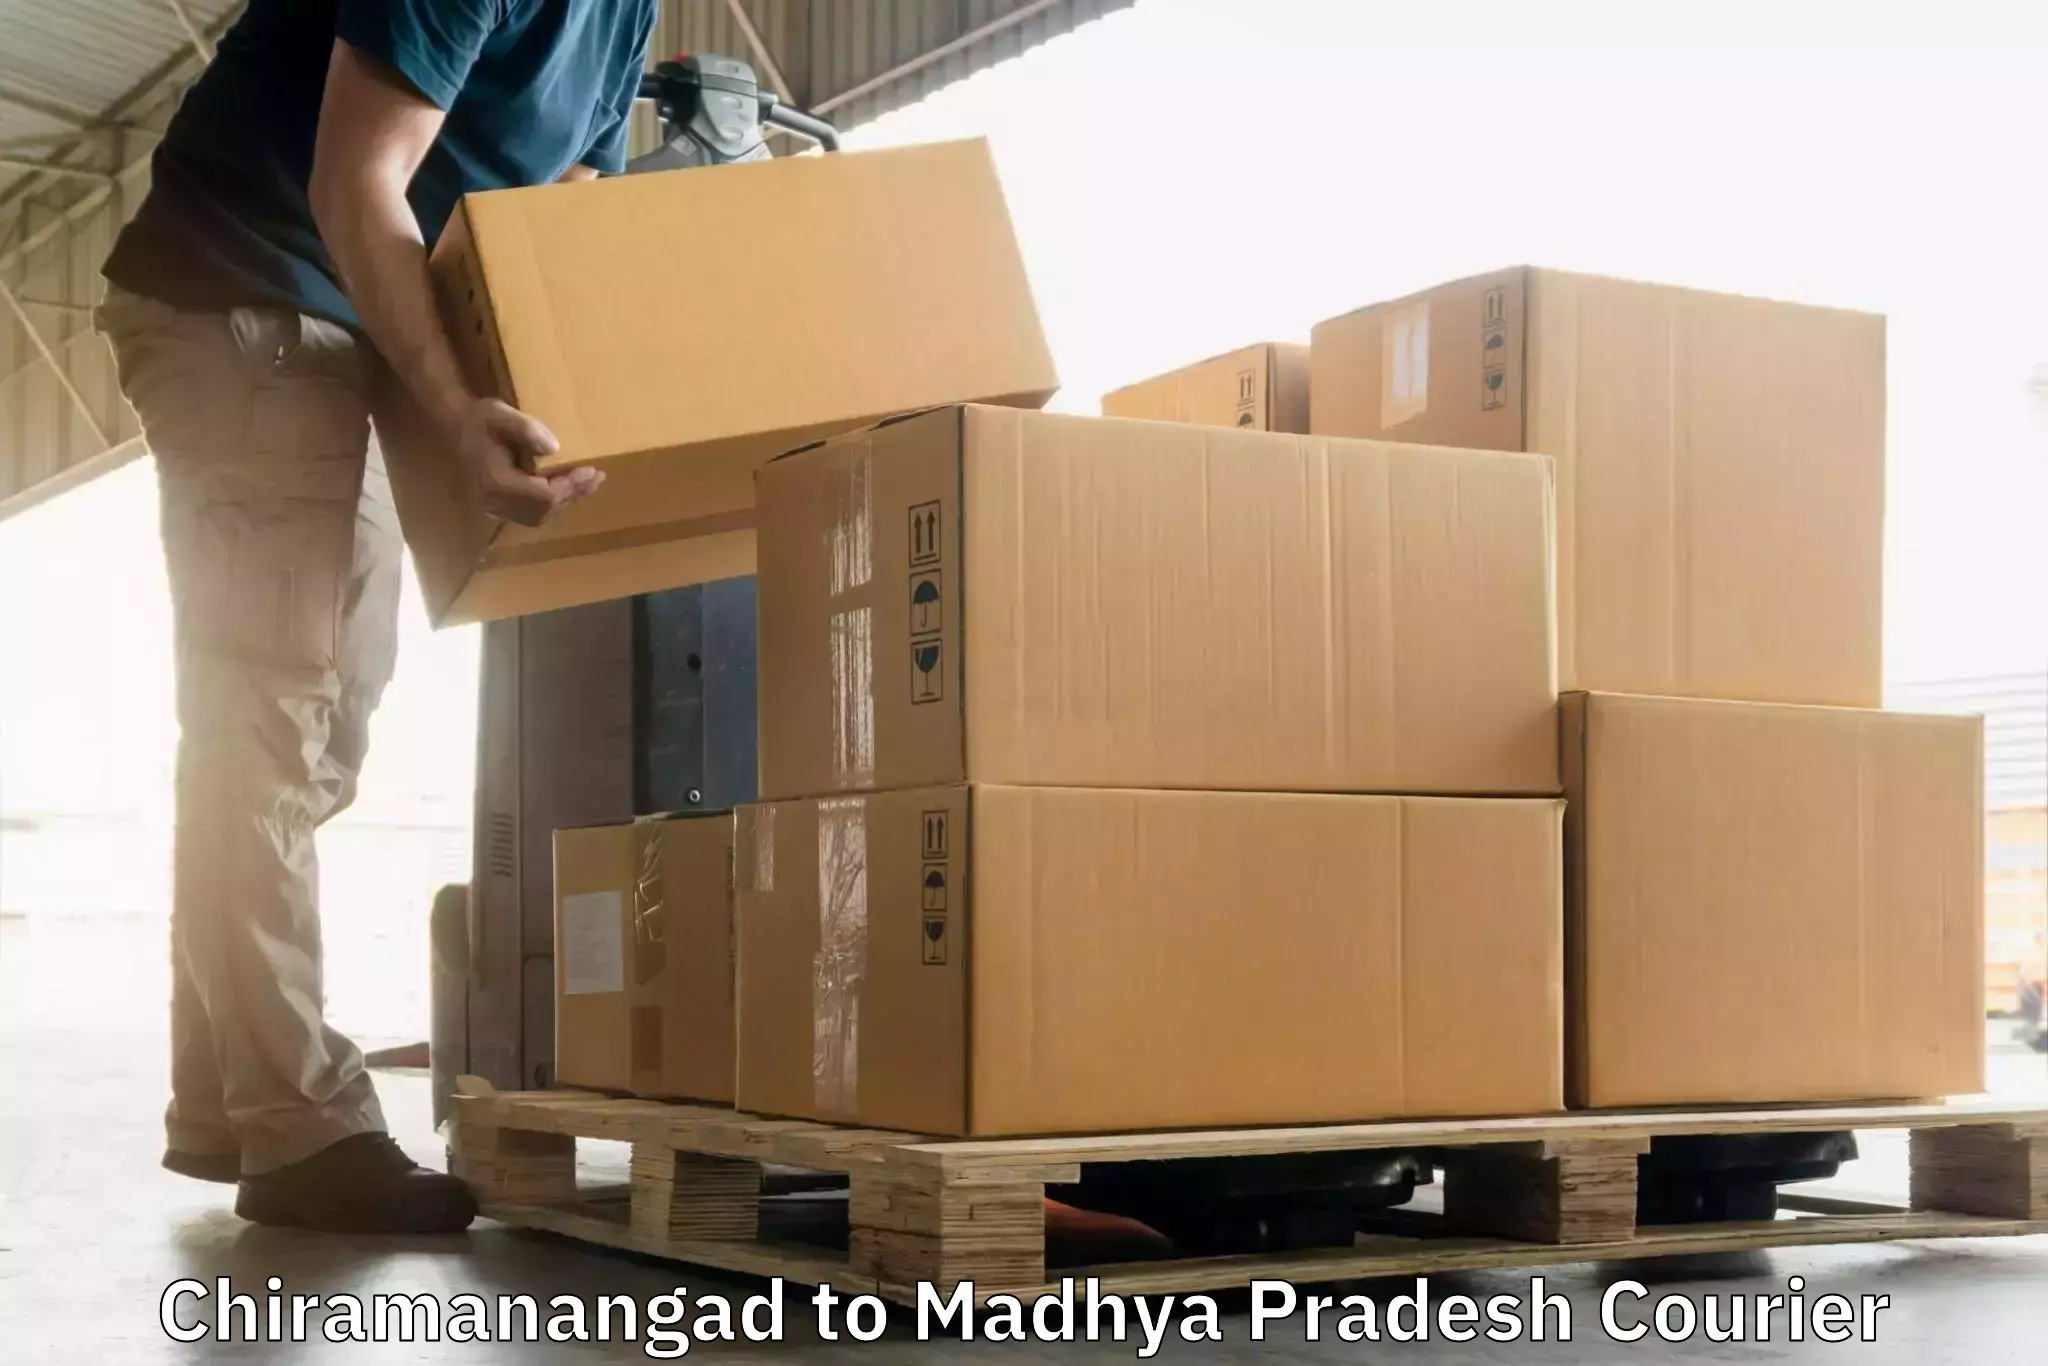 Express courier capabilities Chiramanangad to Madhya Pradesh